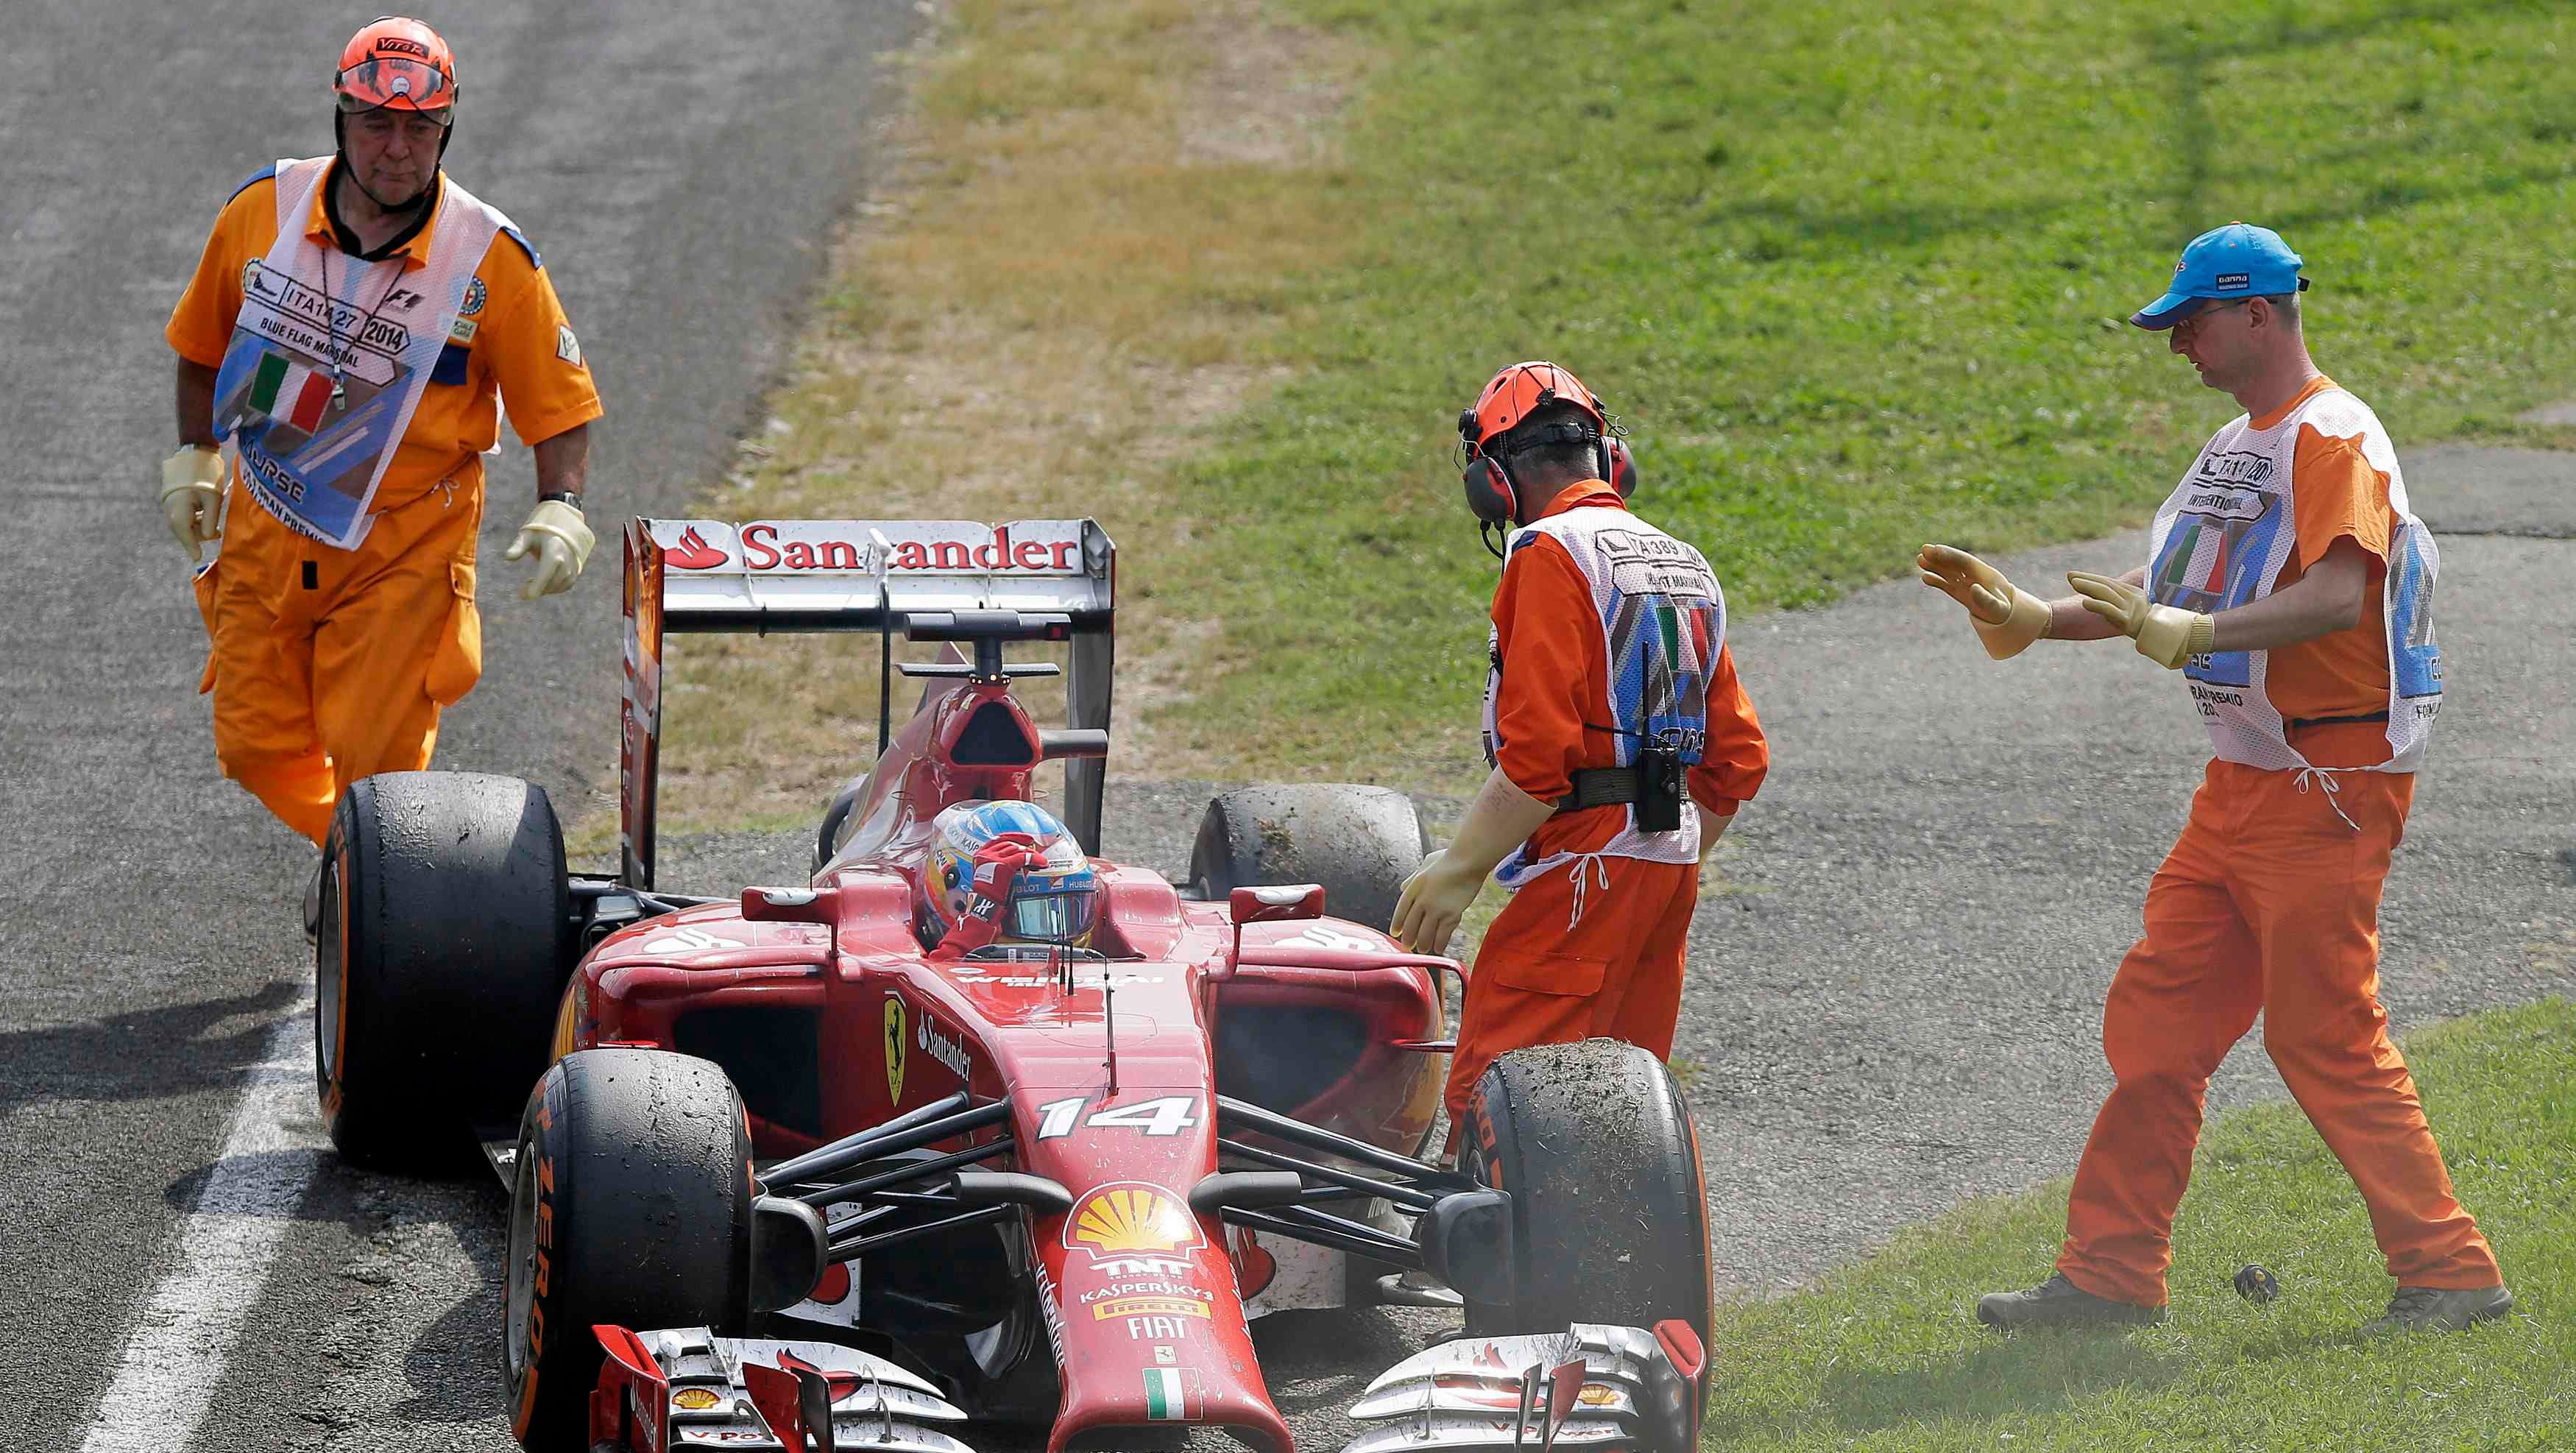 Ferrari S Fall In Formula One Causing Corporate Concern